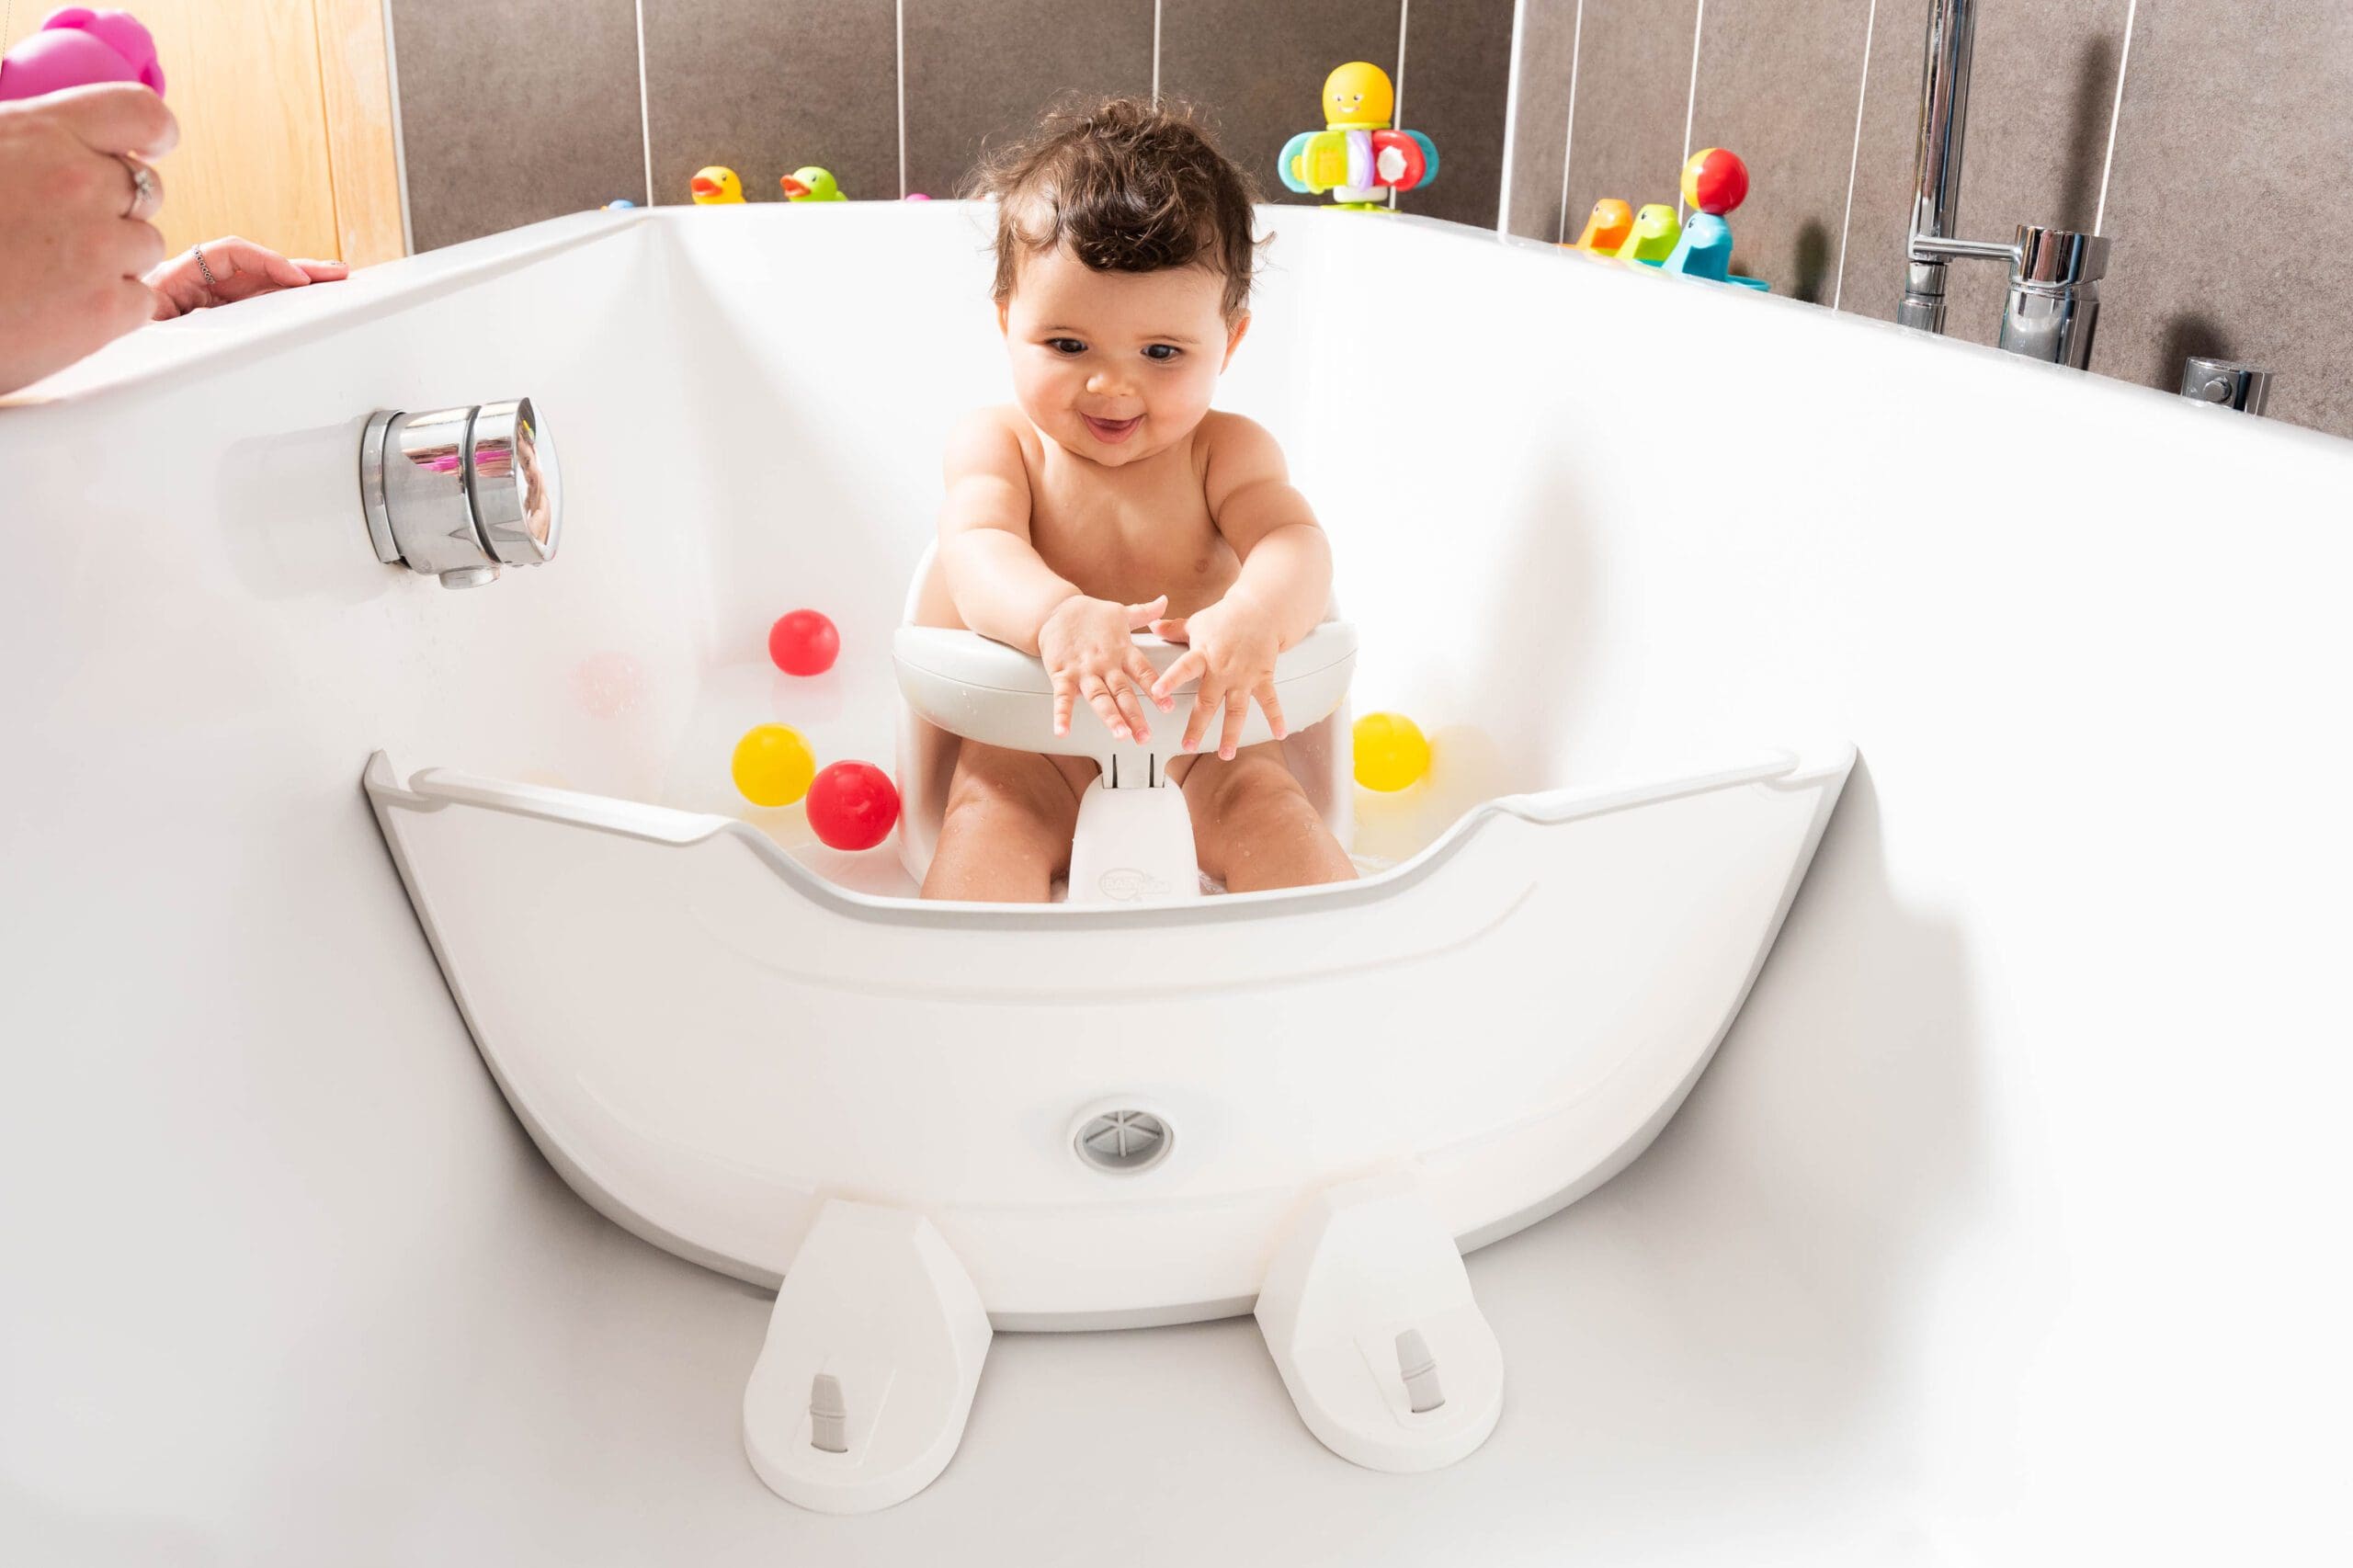 BabyDam bathwater barrier in bath with child